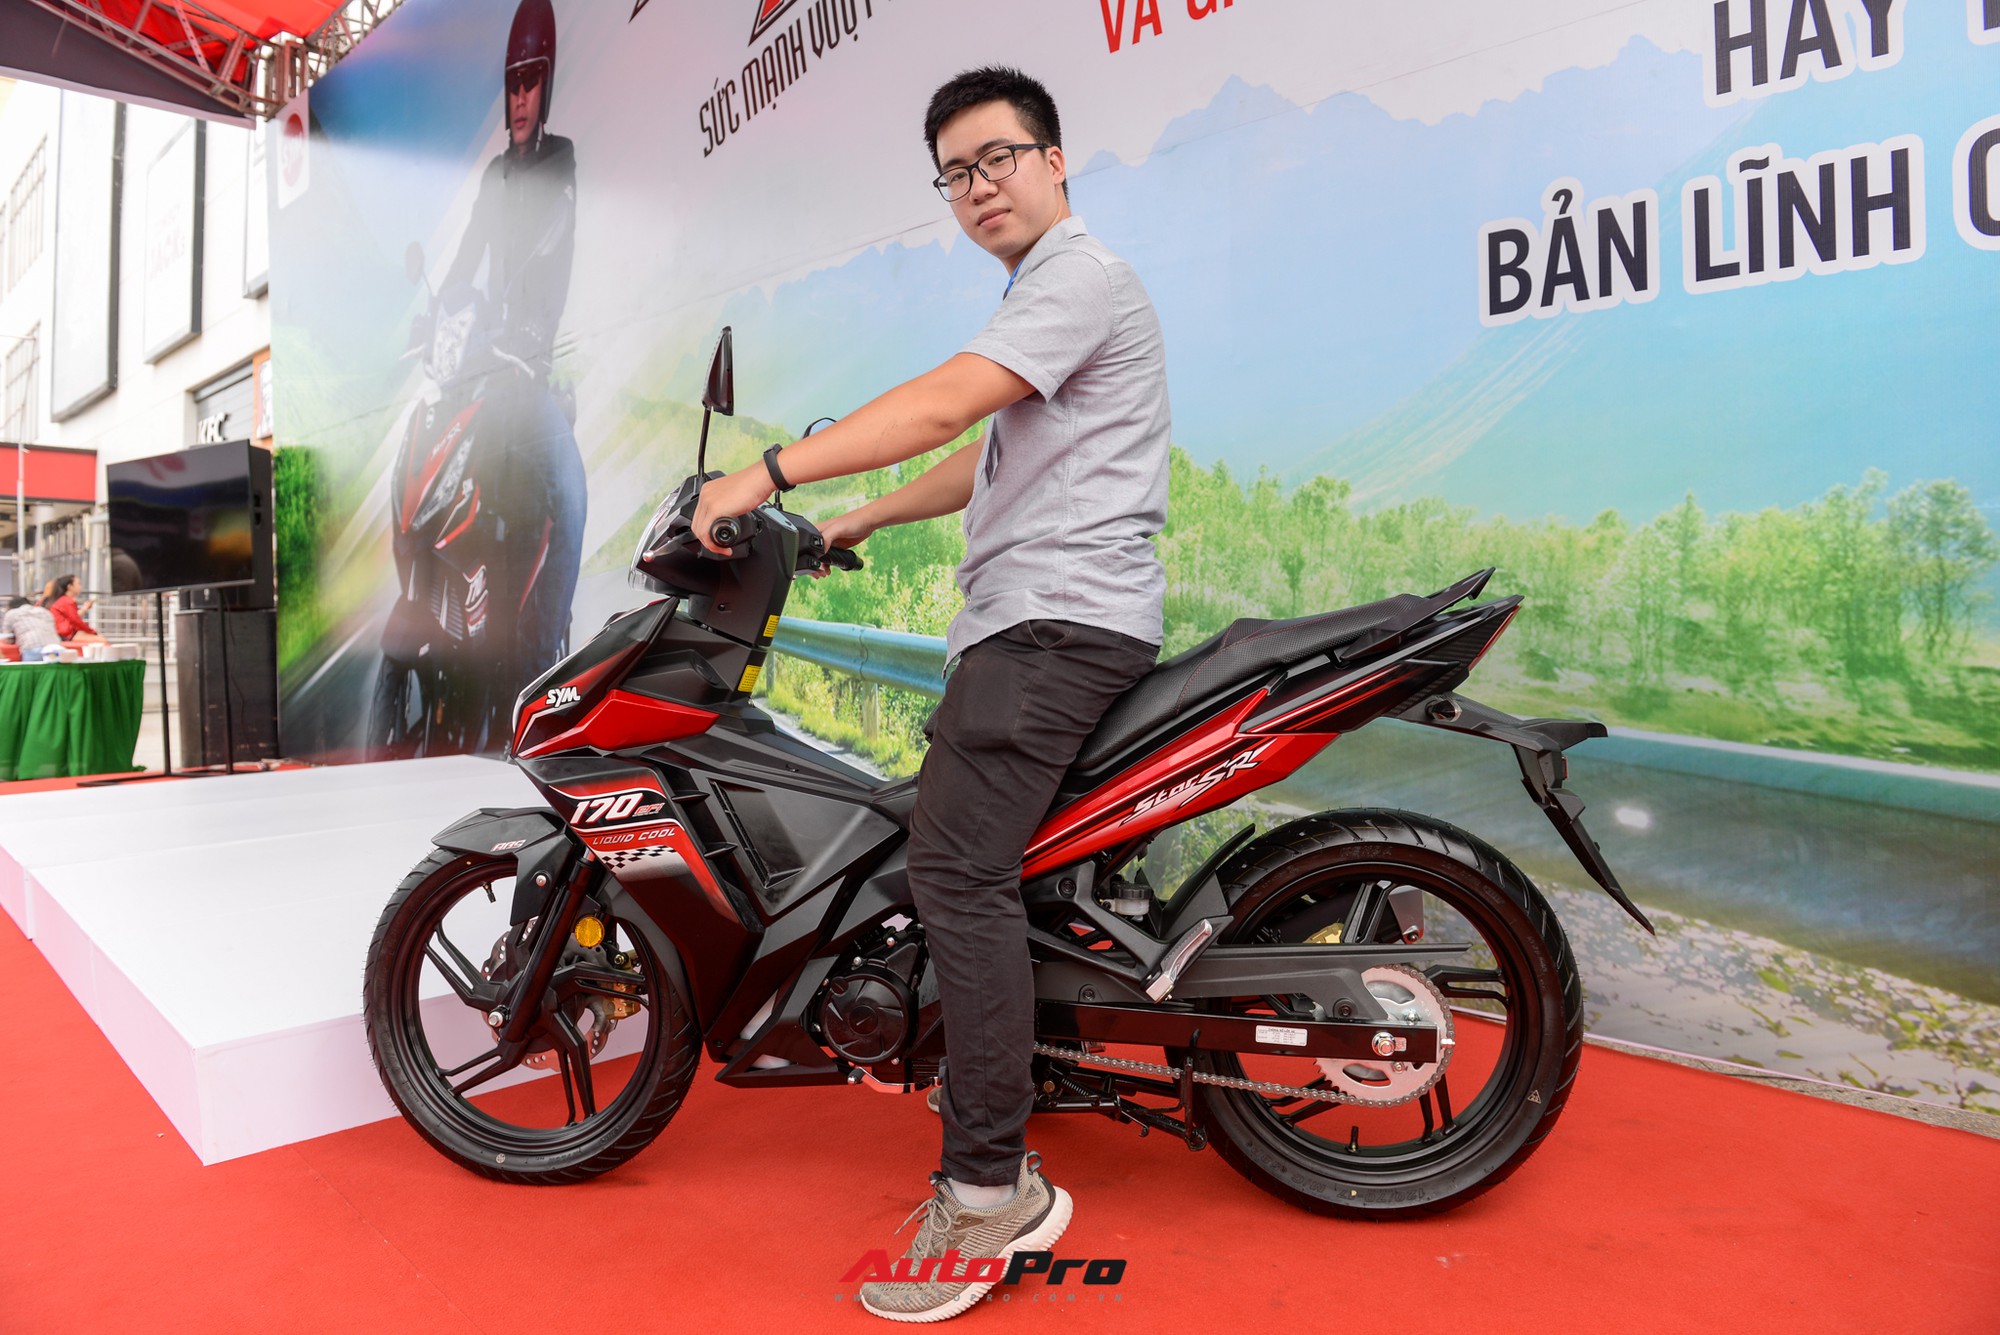 Bộ ba xe côn tay dưới 150cc đáng mua nhất ở Việt Nam